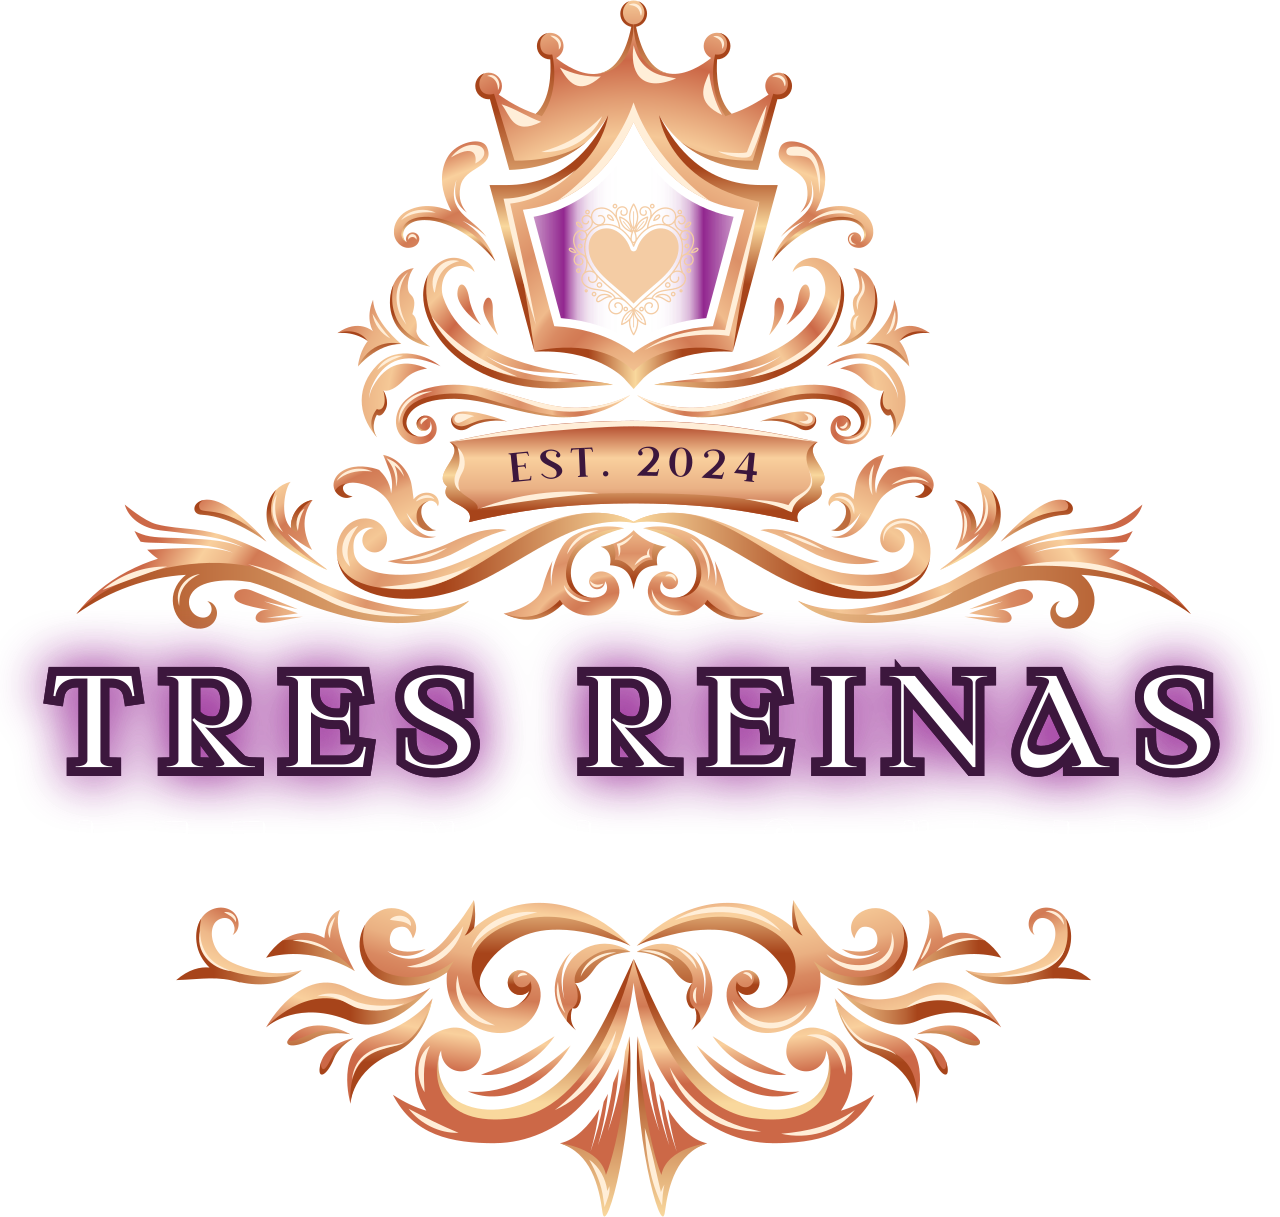 Tres Reinas's logo